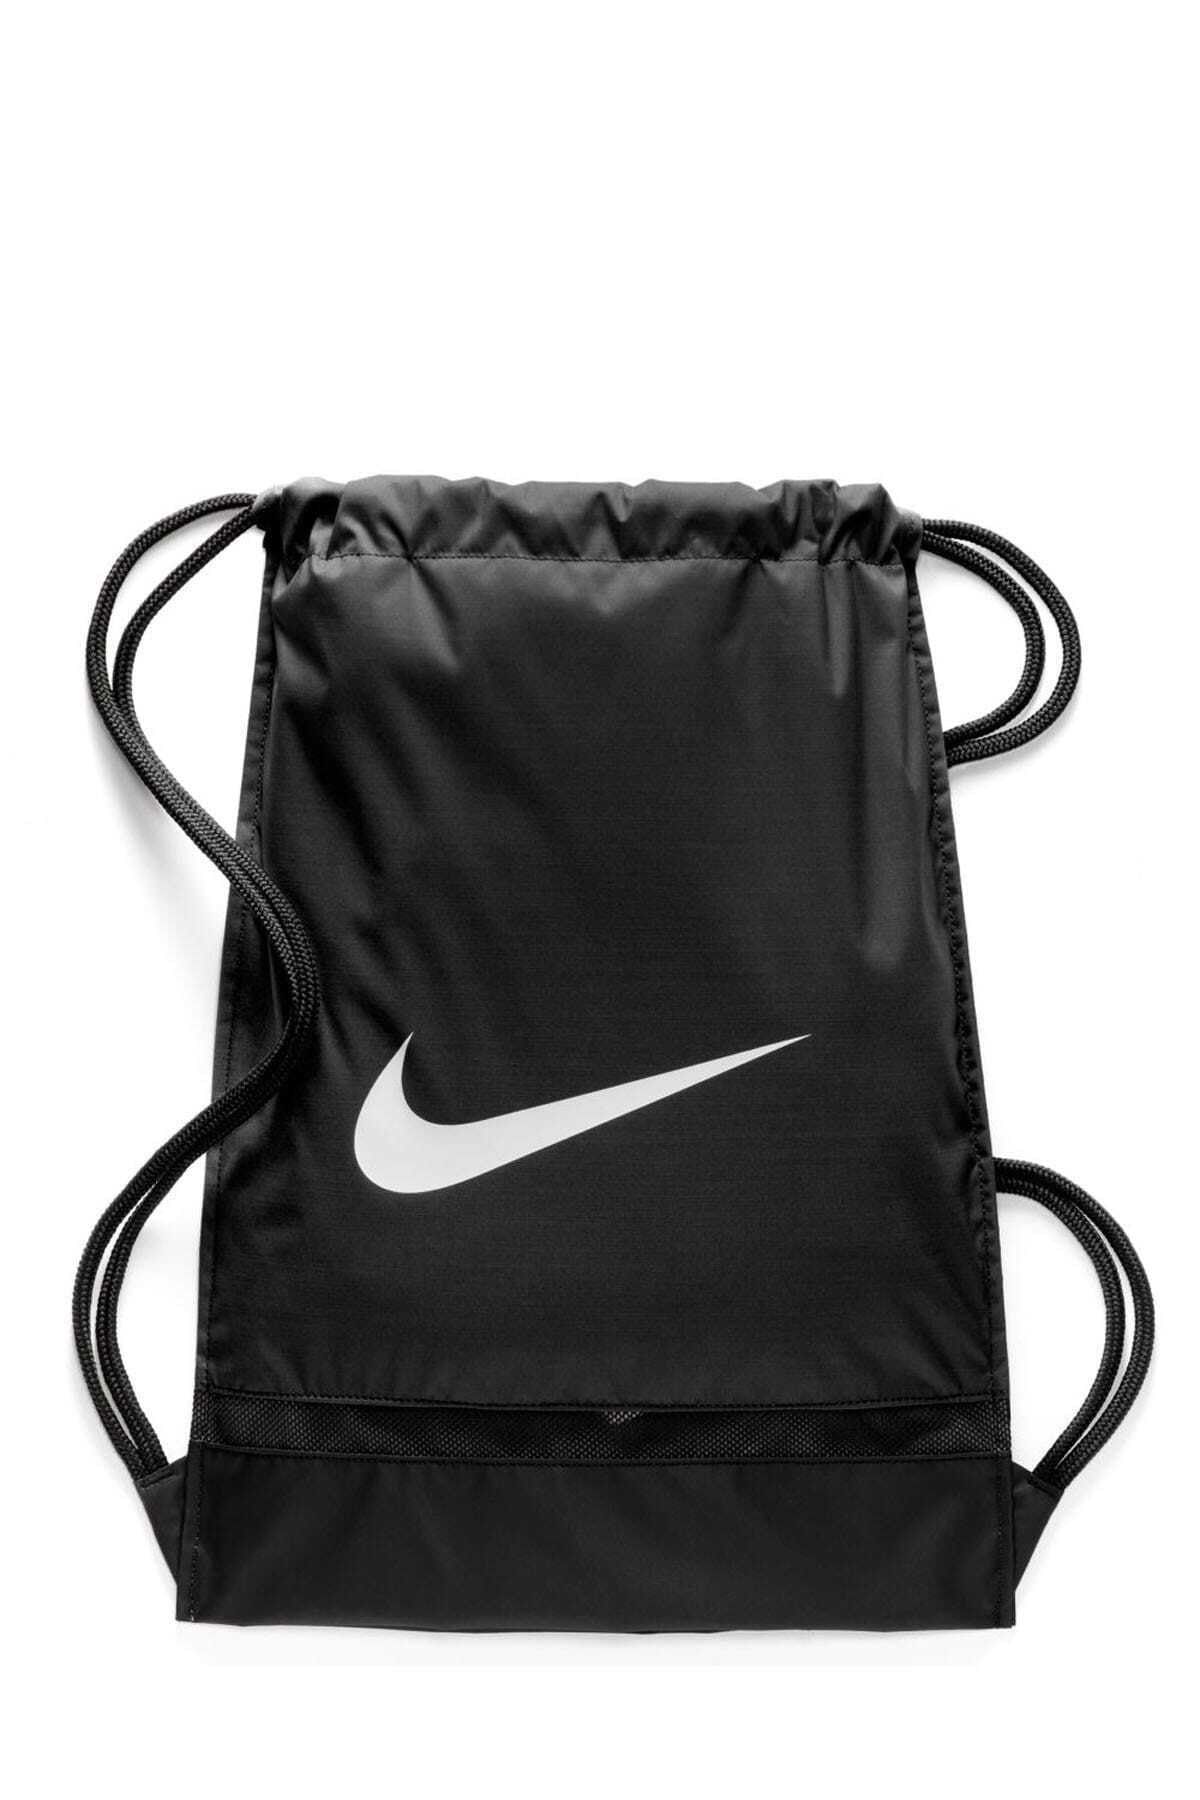 Nike Unisex Sırt Çanta - Brasilia Training Gymsack - BA5338-010